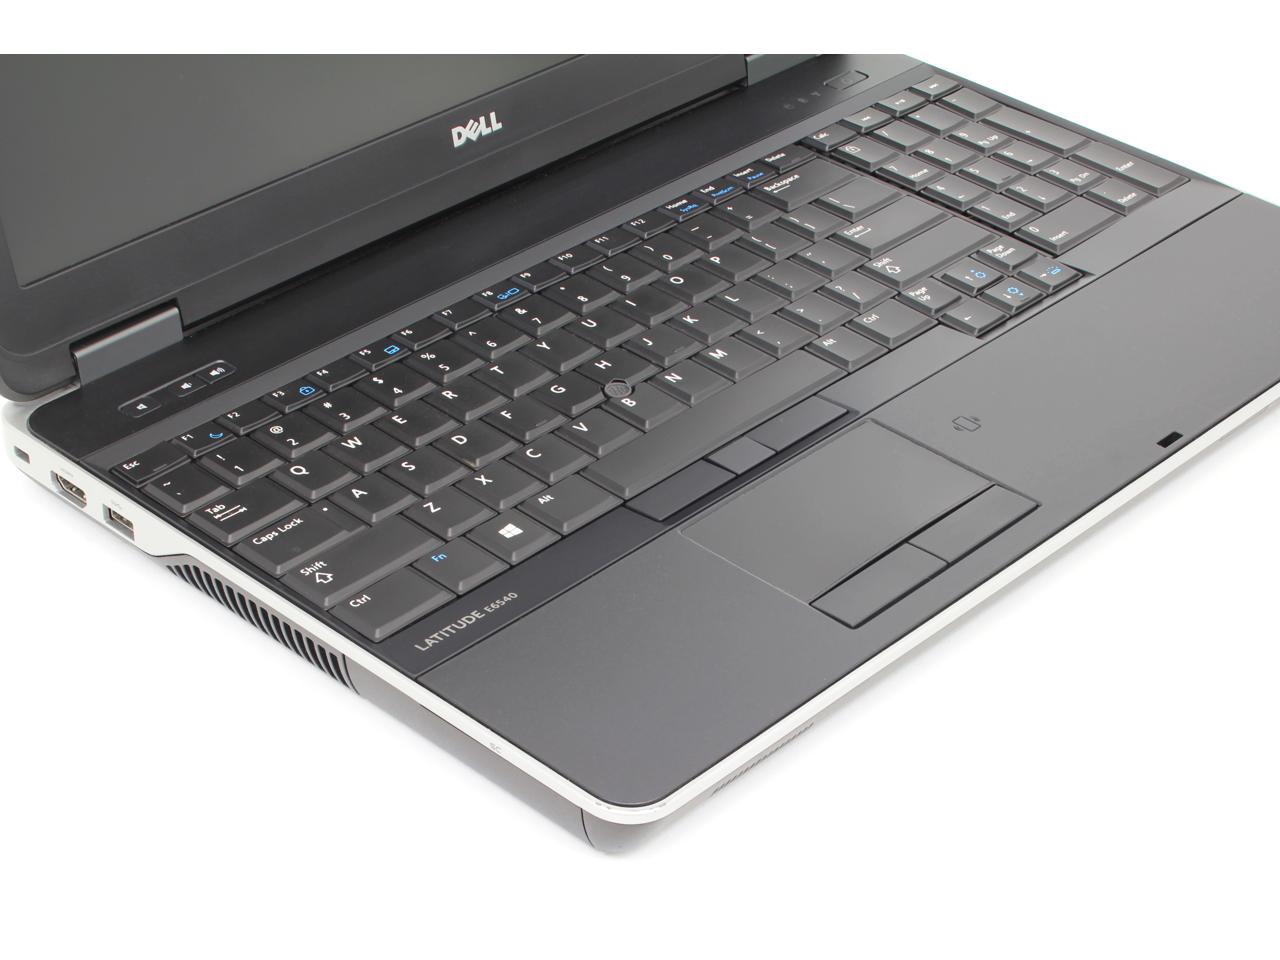 Refurbished: Dell Latitude E6540 Laptop, Quad Core i7 4800MQ 2.7 